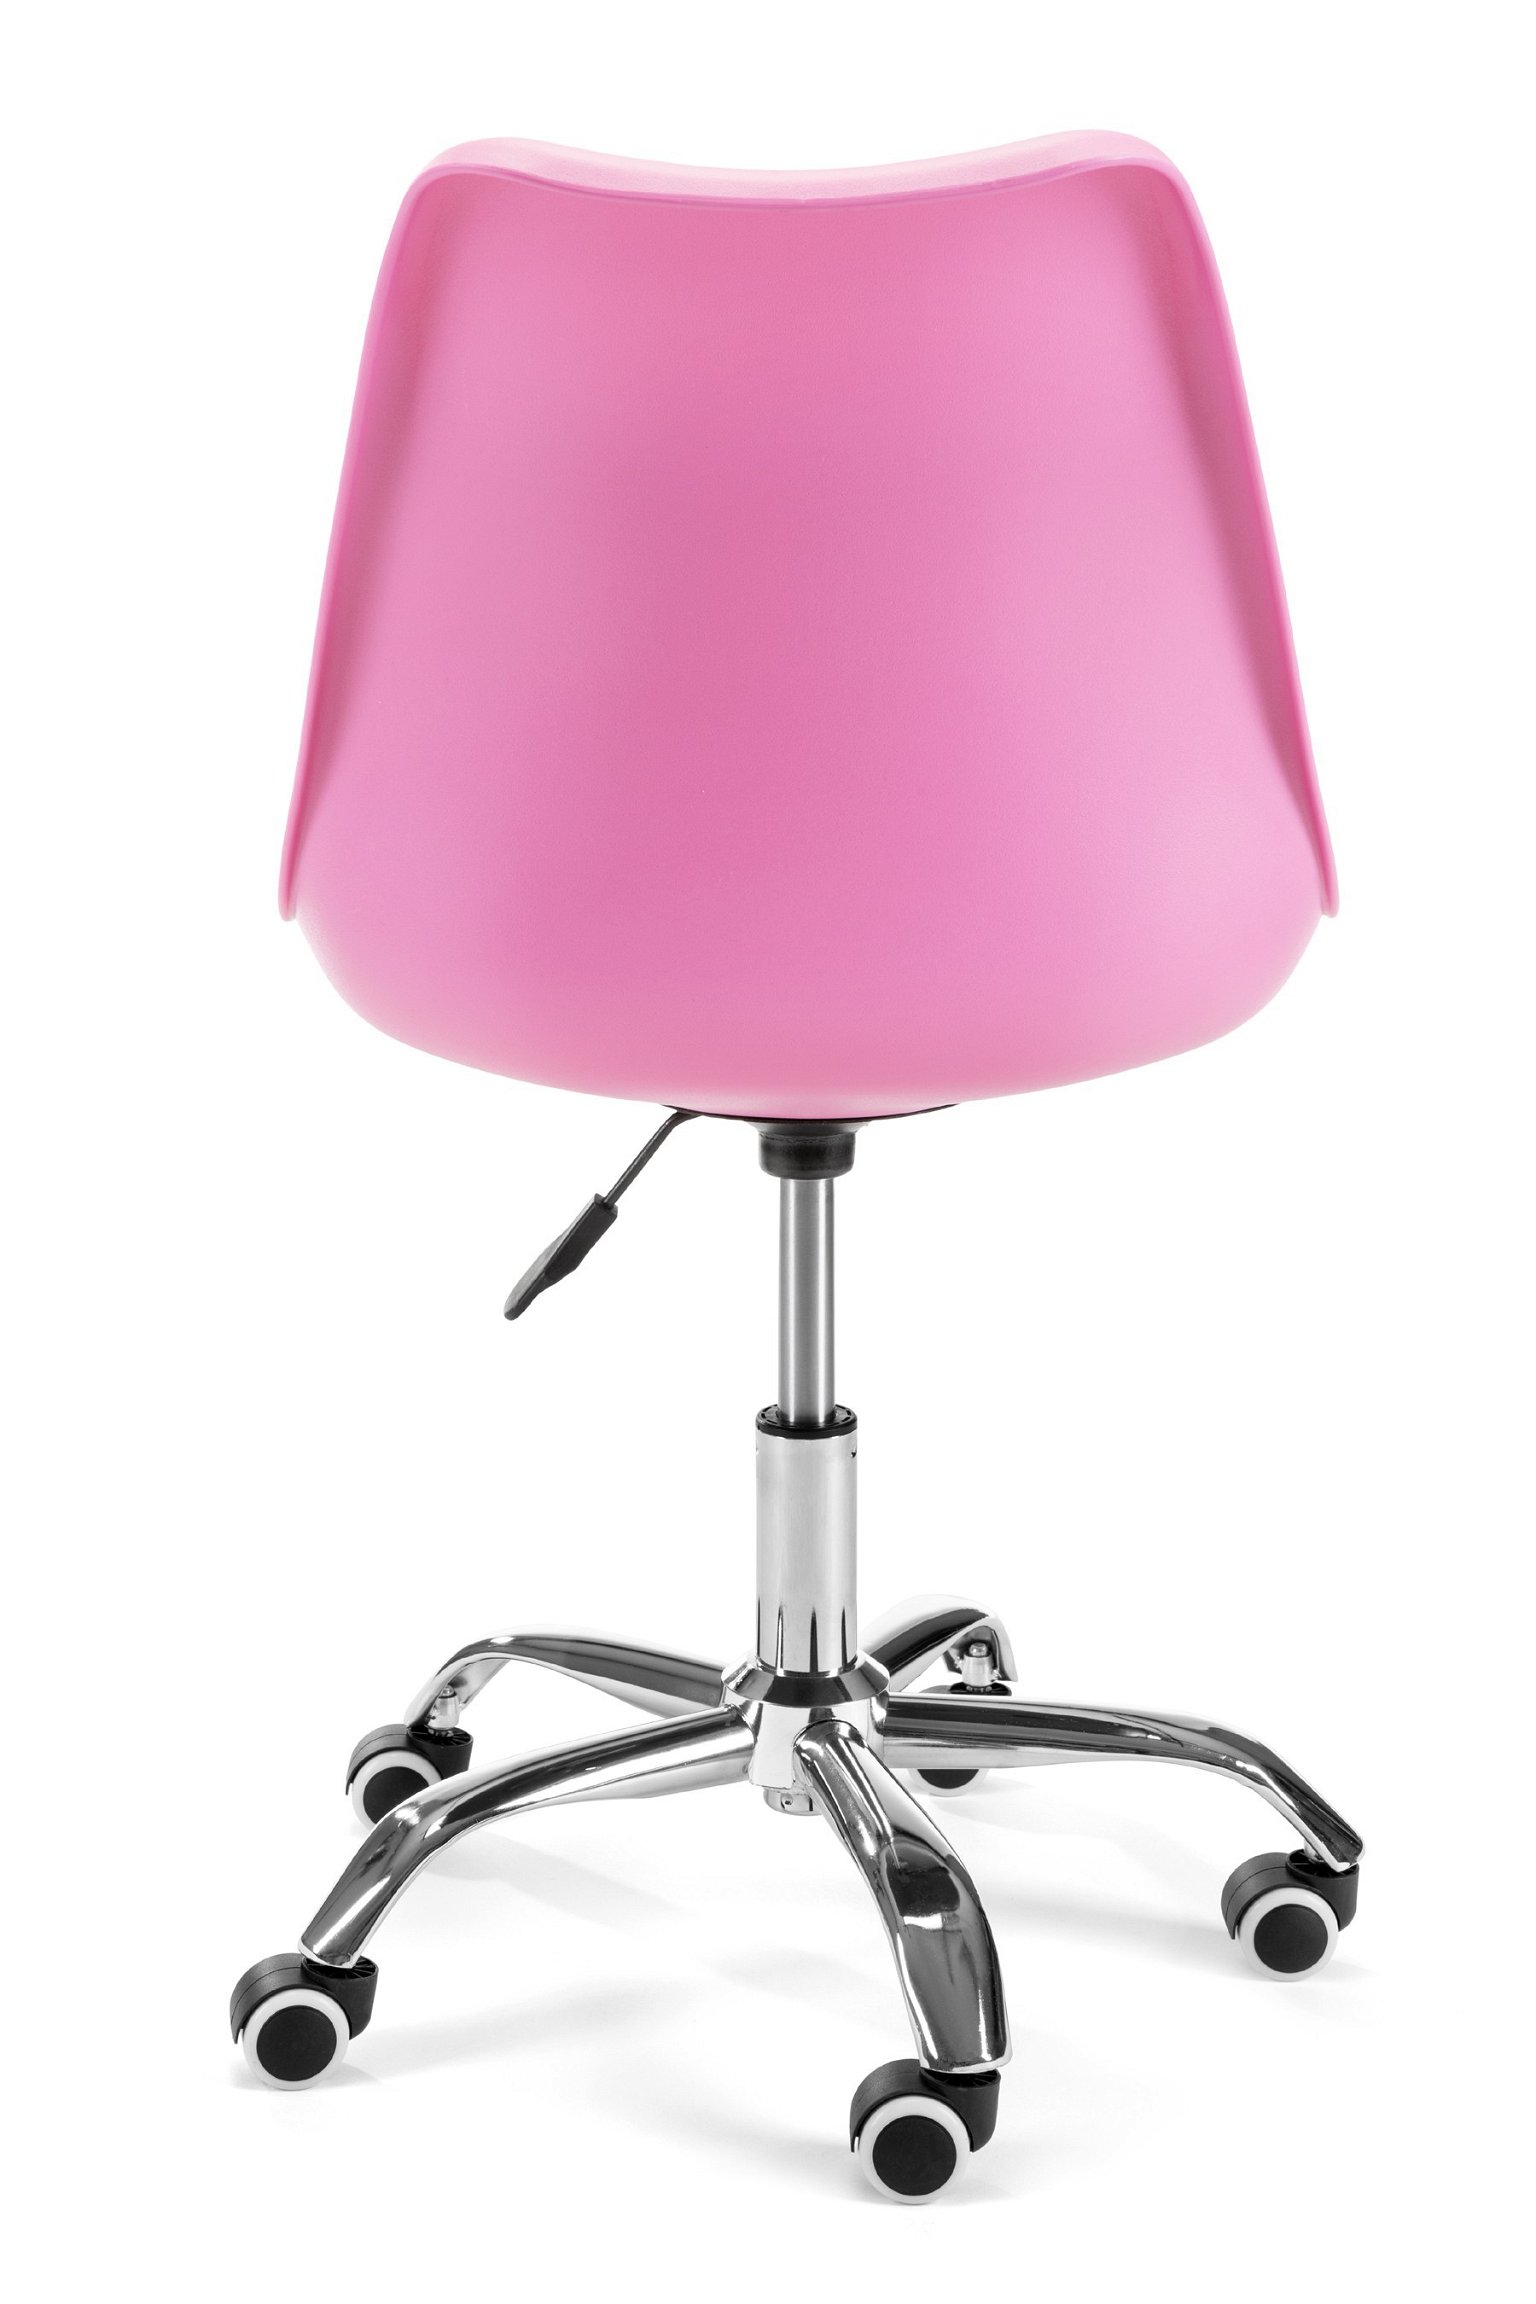 Vaikiška kėdė FD005, rožinė - 4